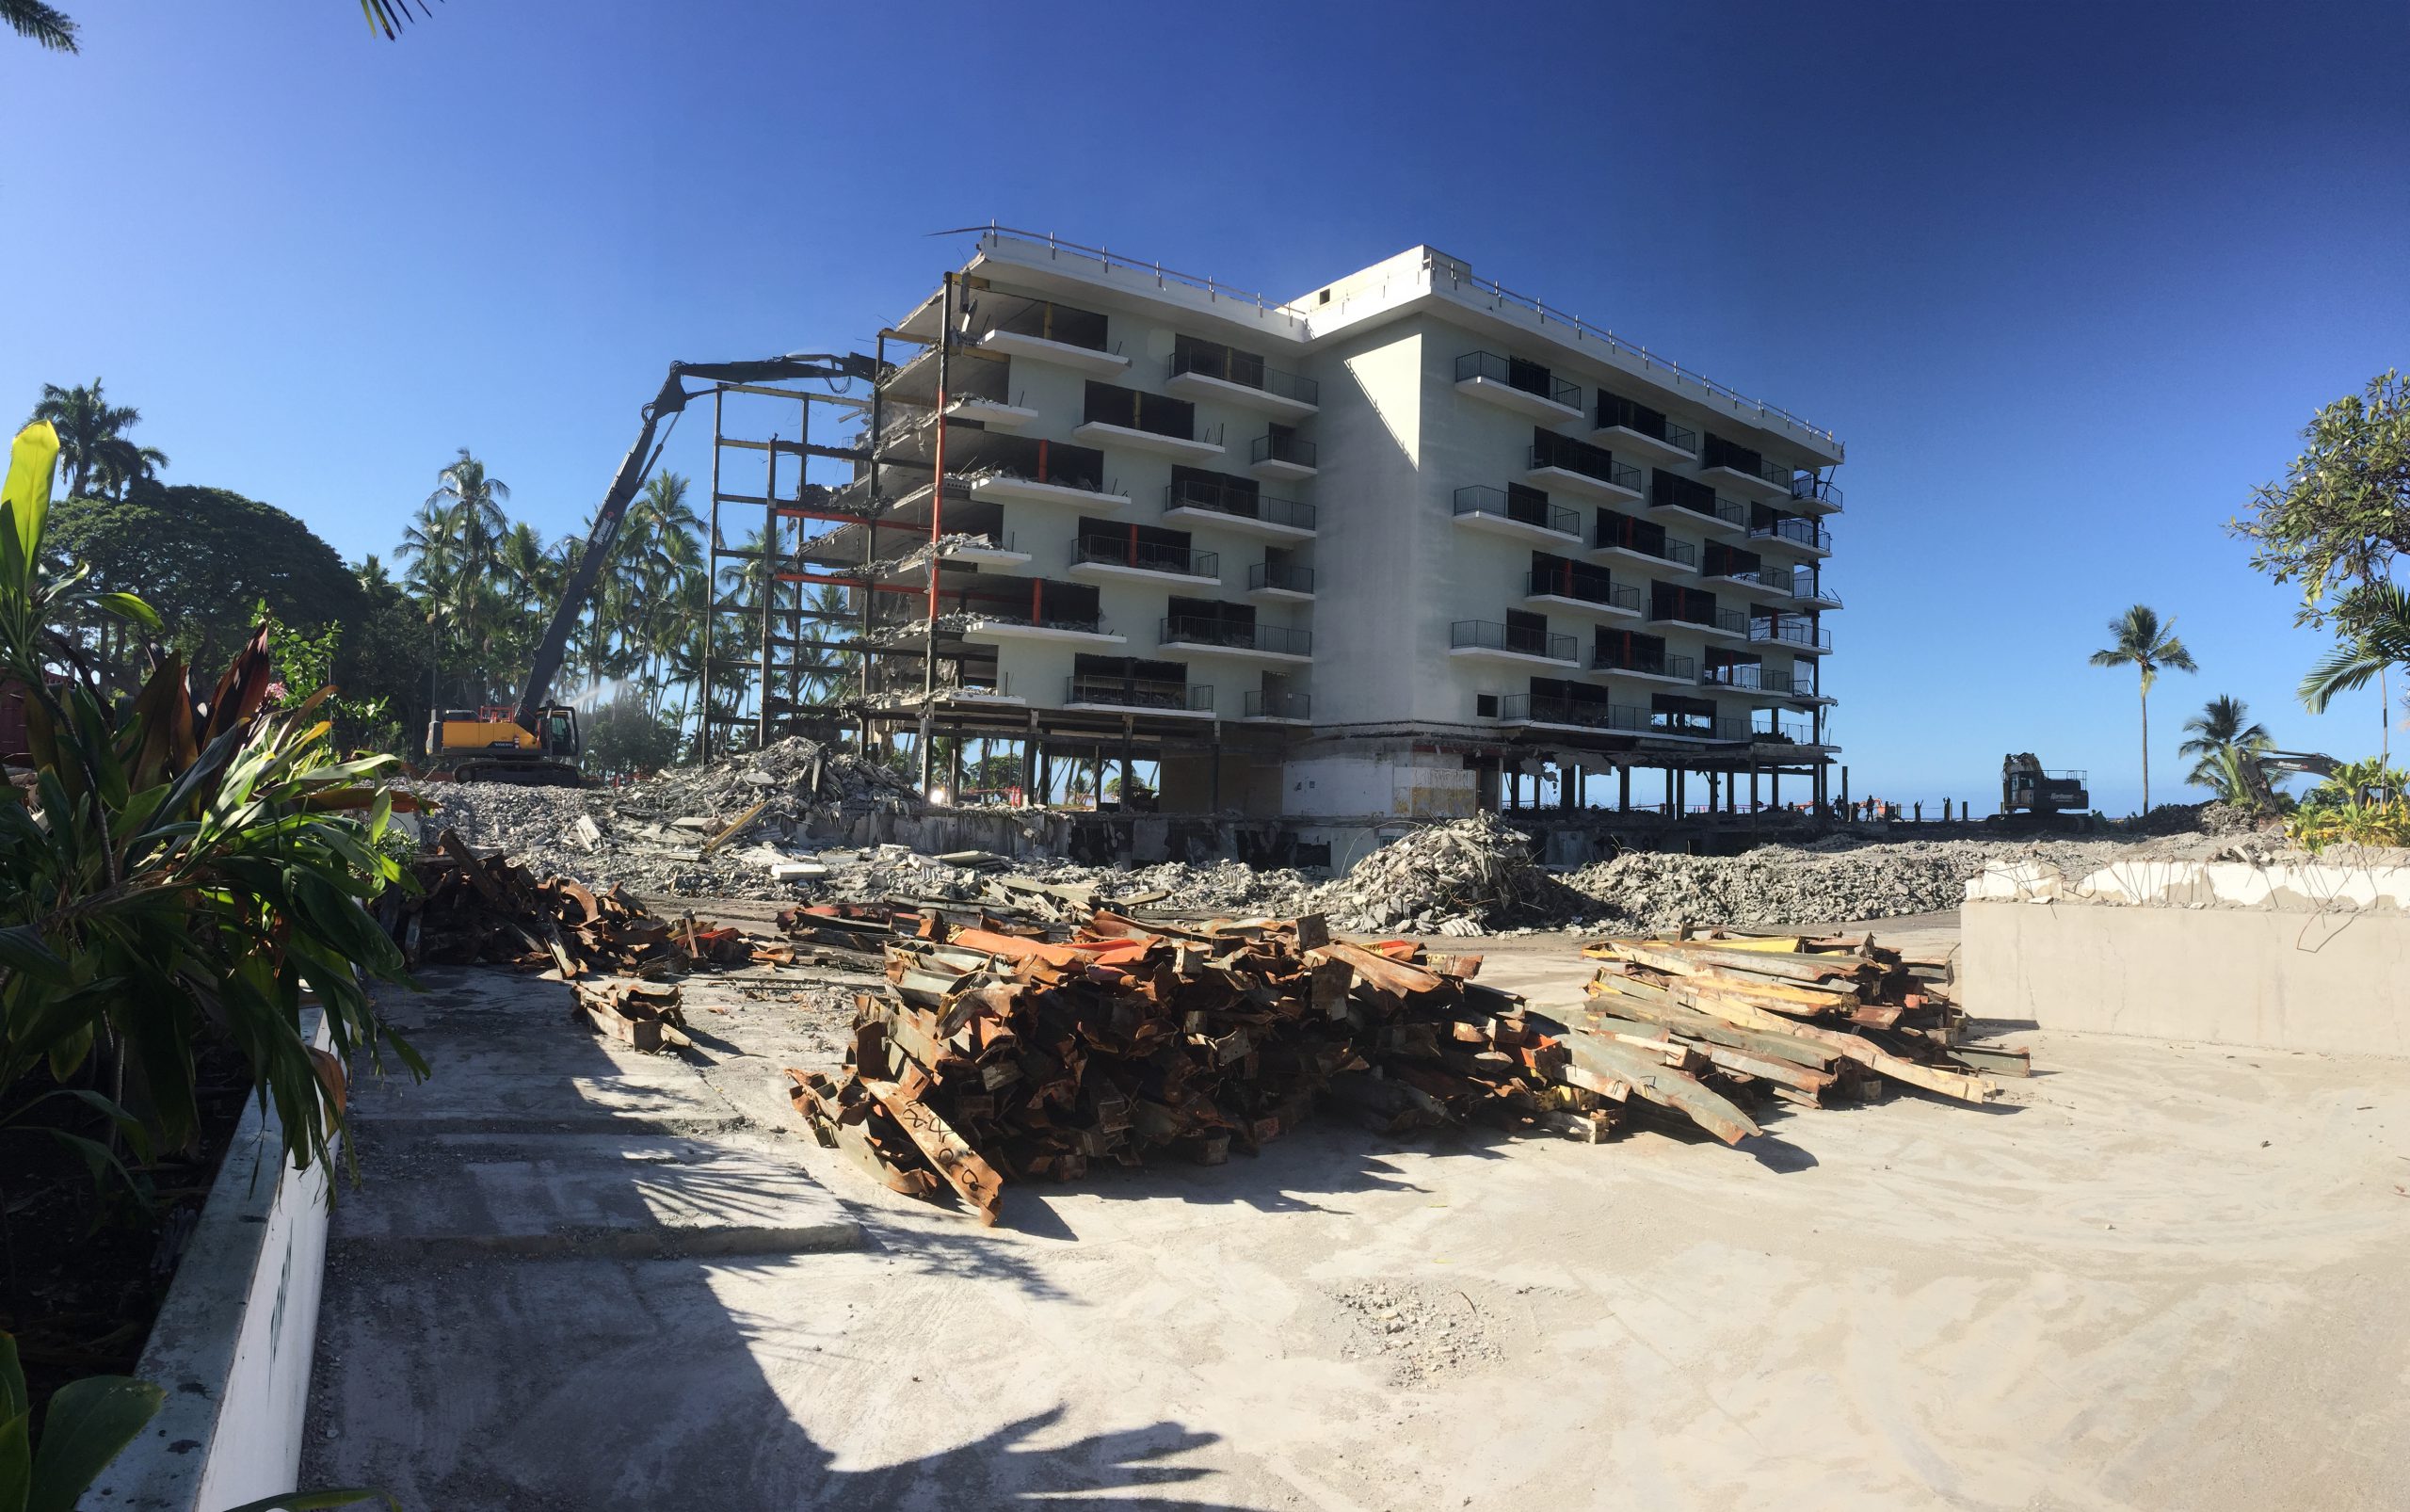 Keauhou Hotel Demolition